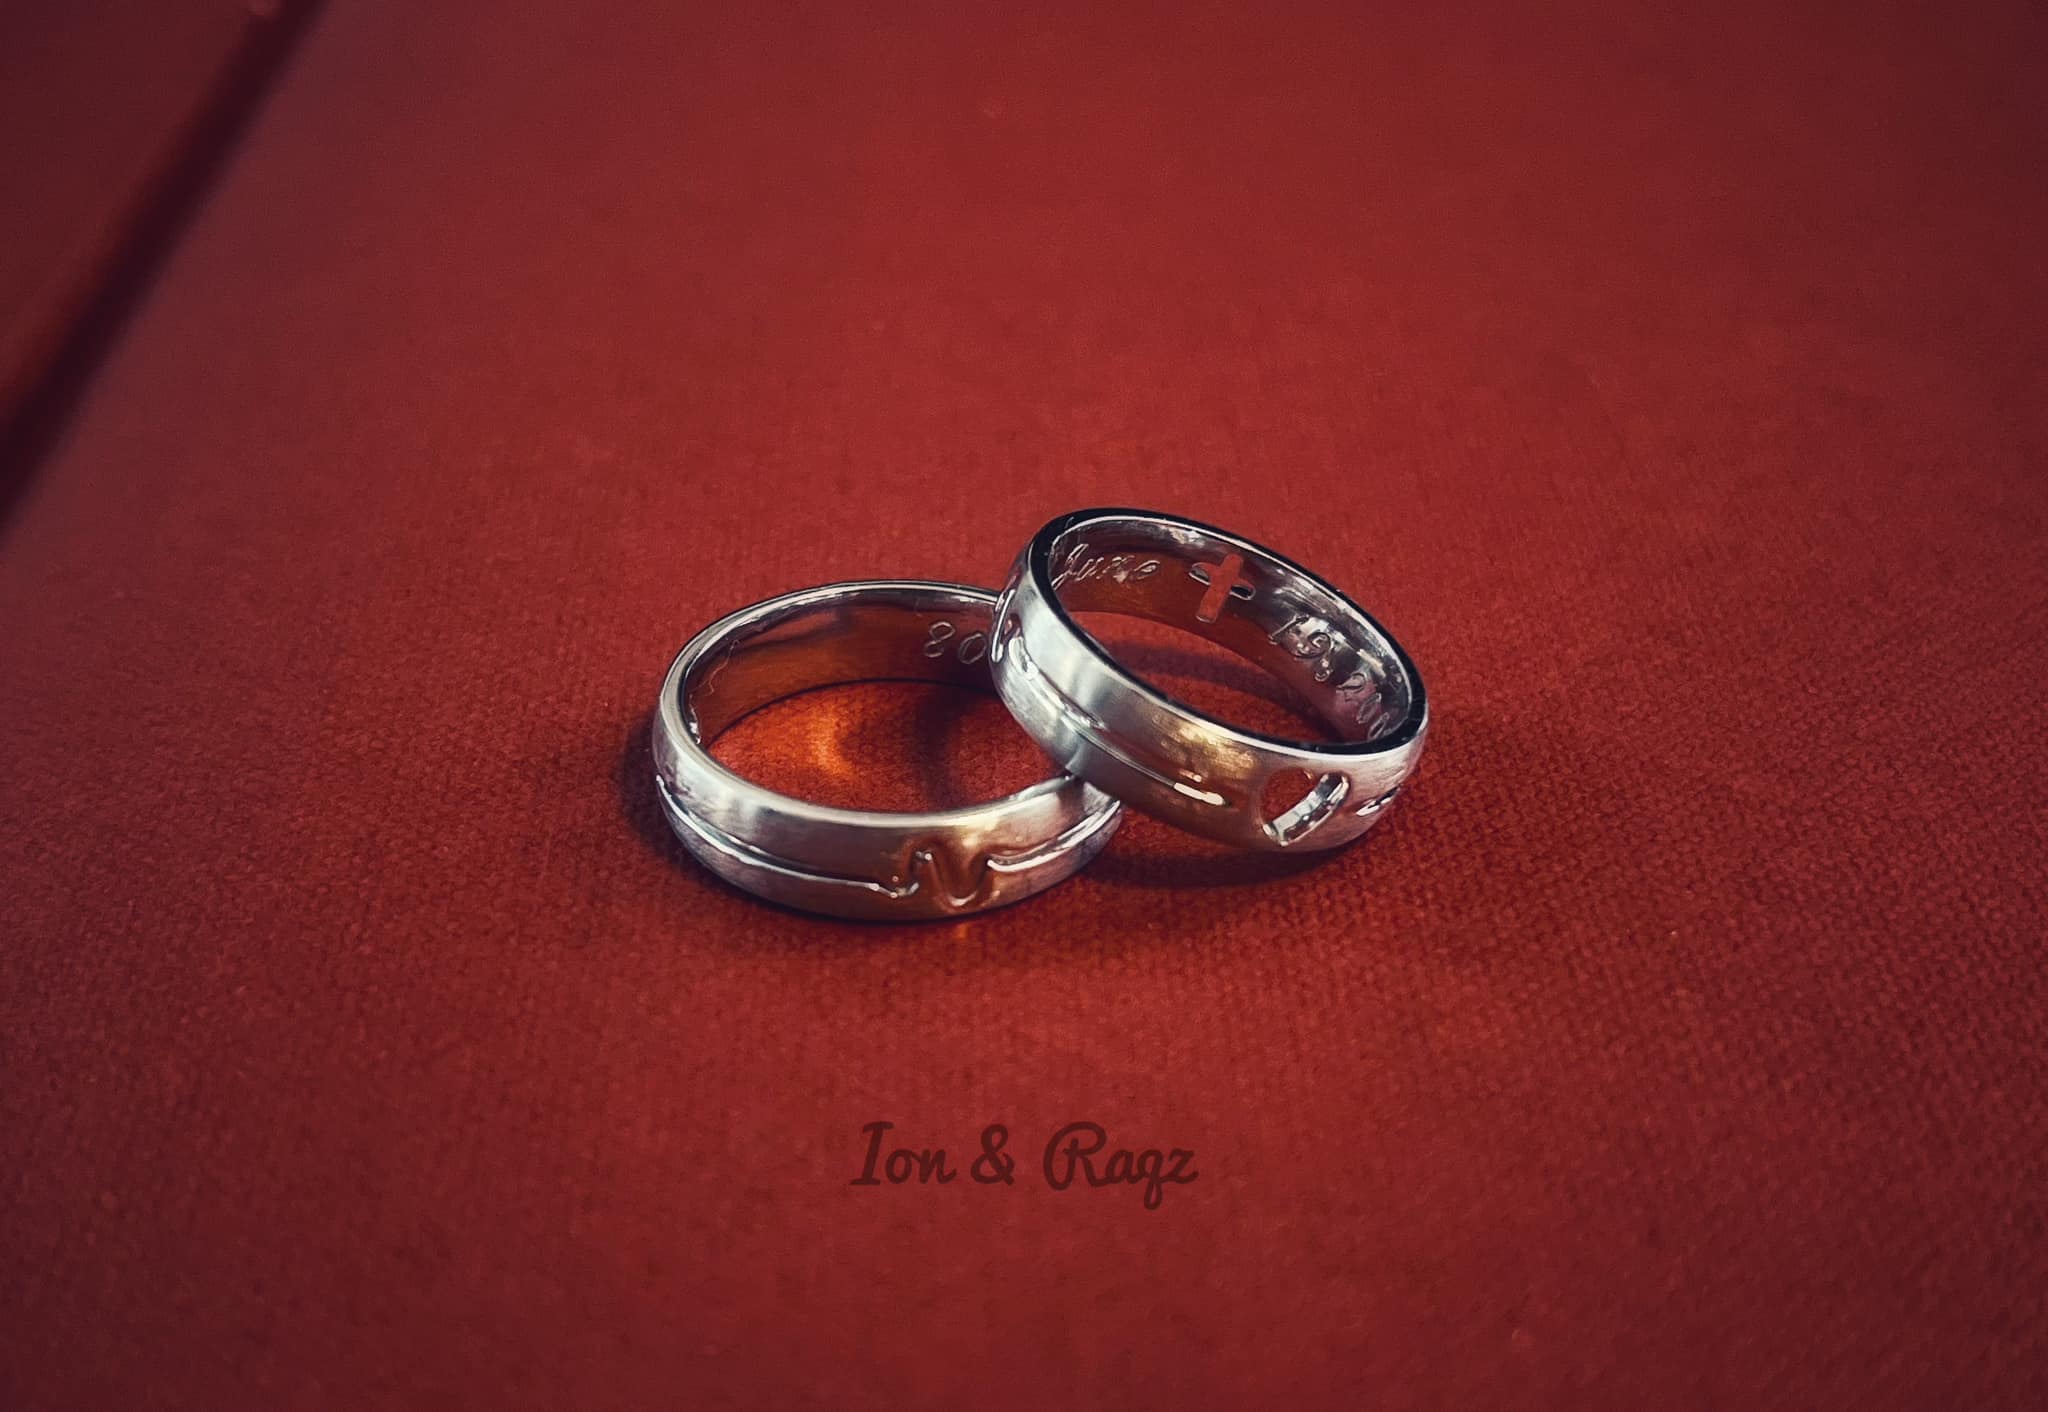 customized wedding ring dubai